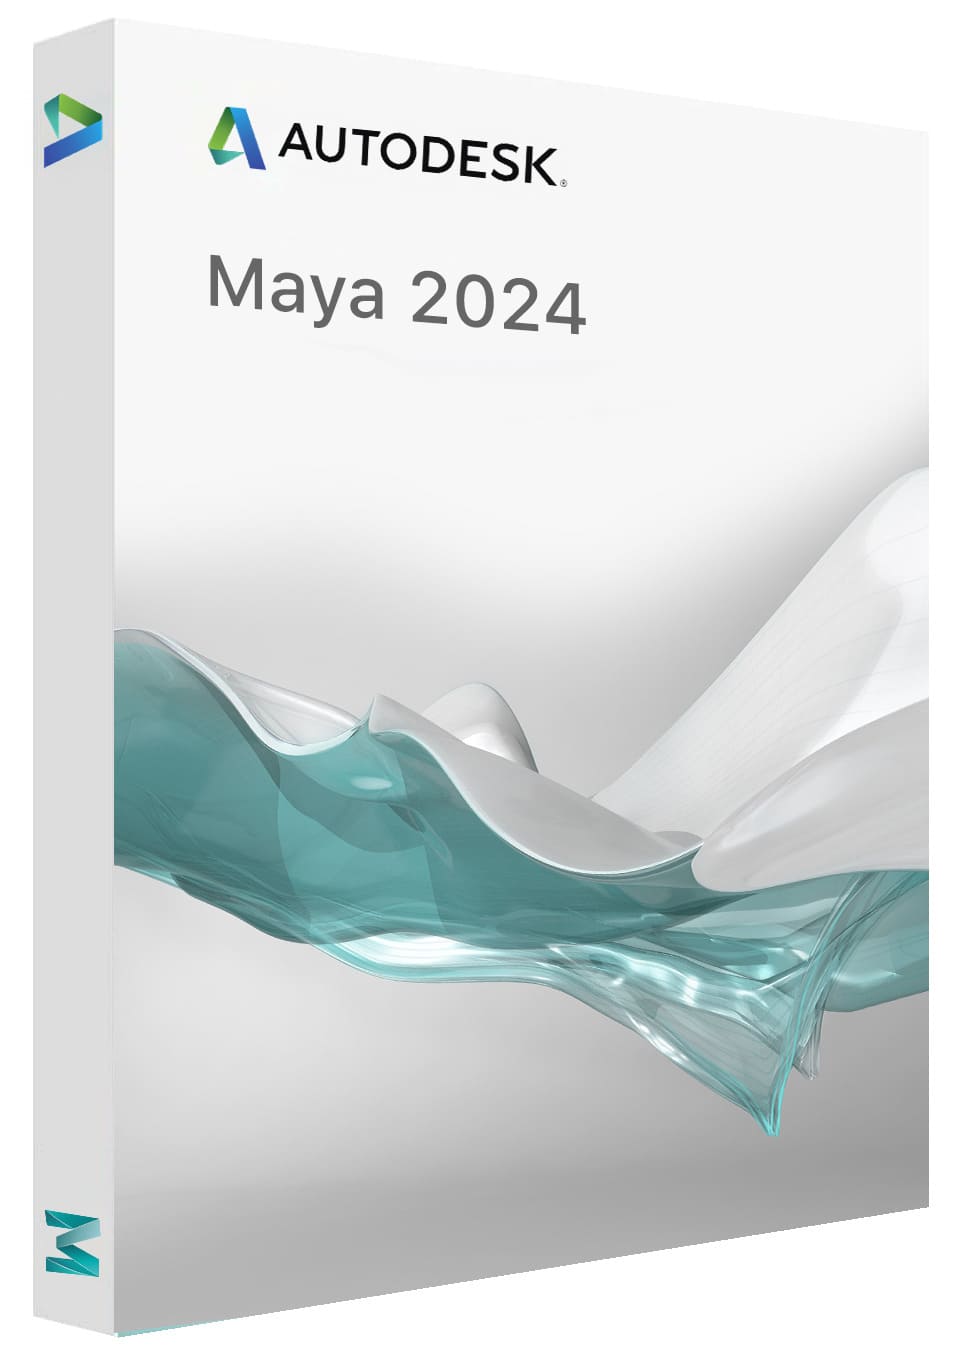 Buy Product key Autodesk Maya 2024 for 25.90€